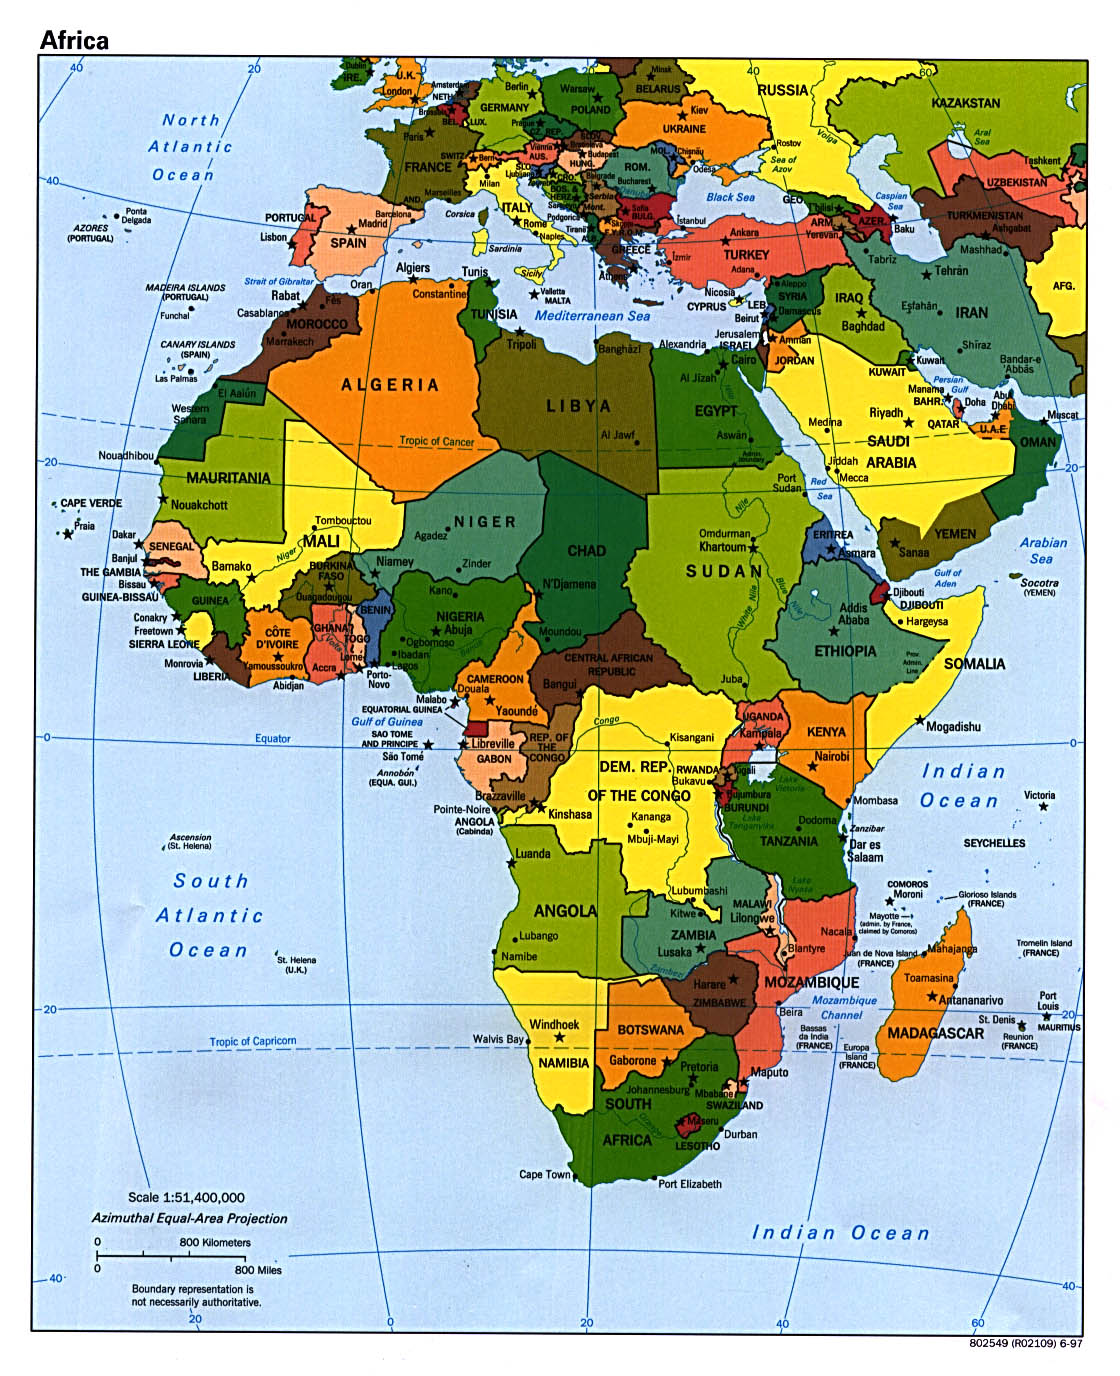 Africa, Asia